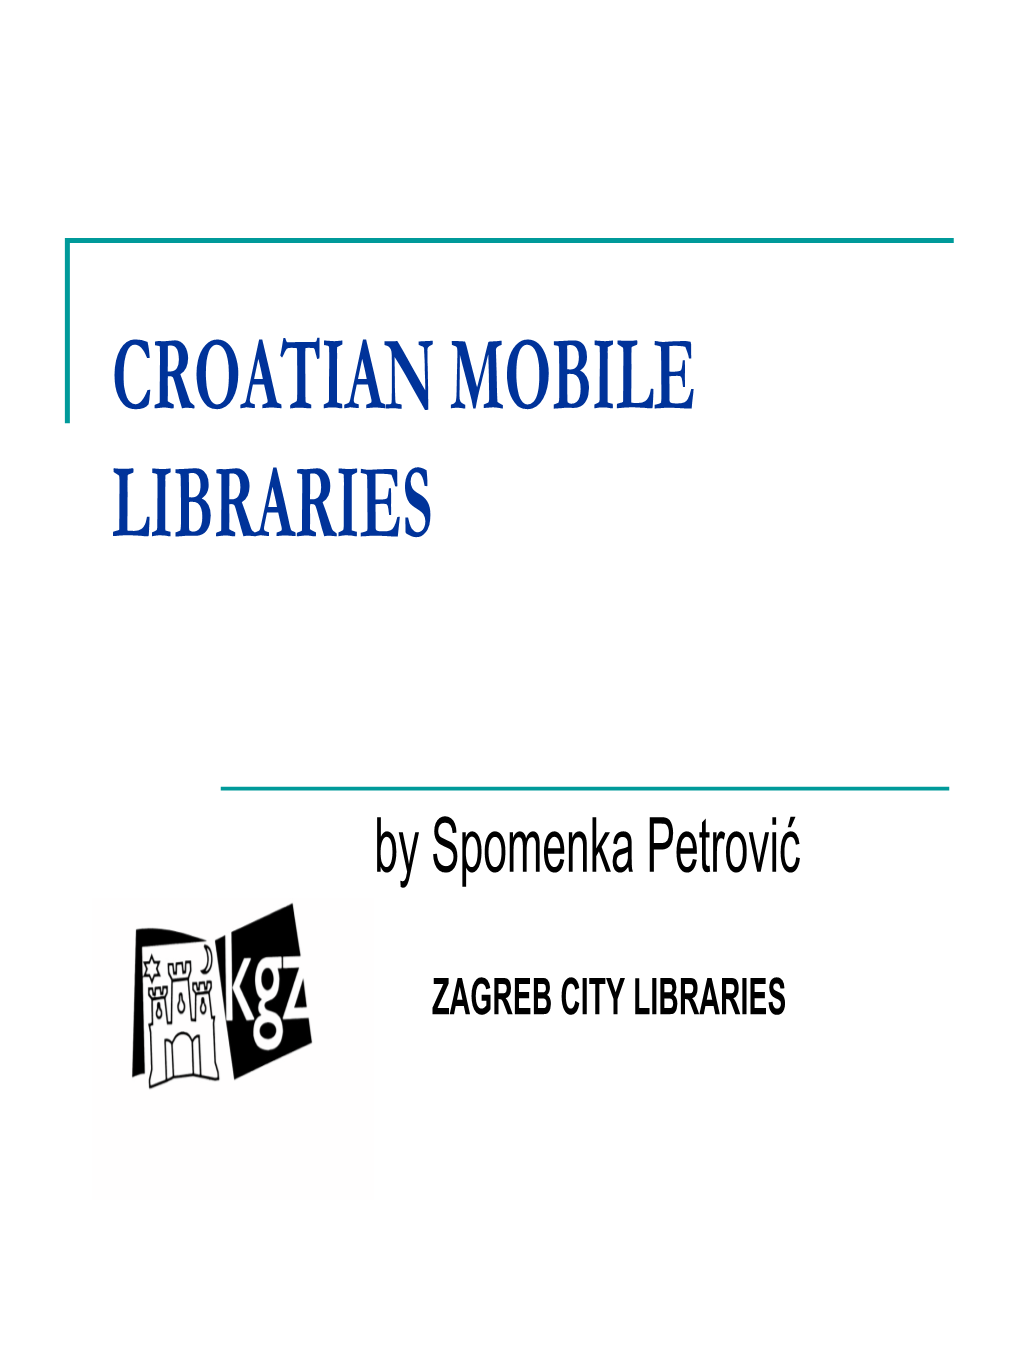 Croatian Mobile Libraries